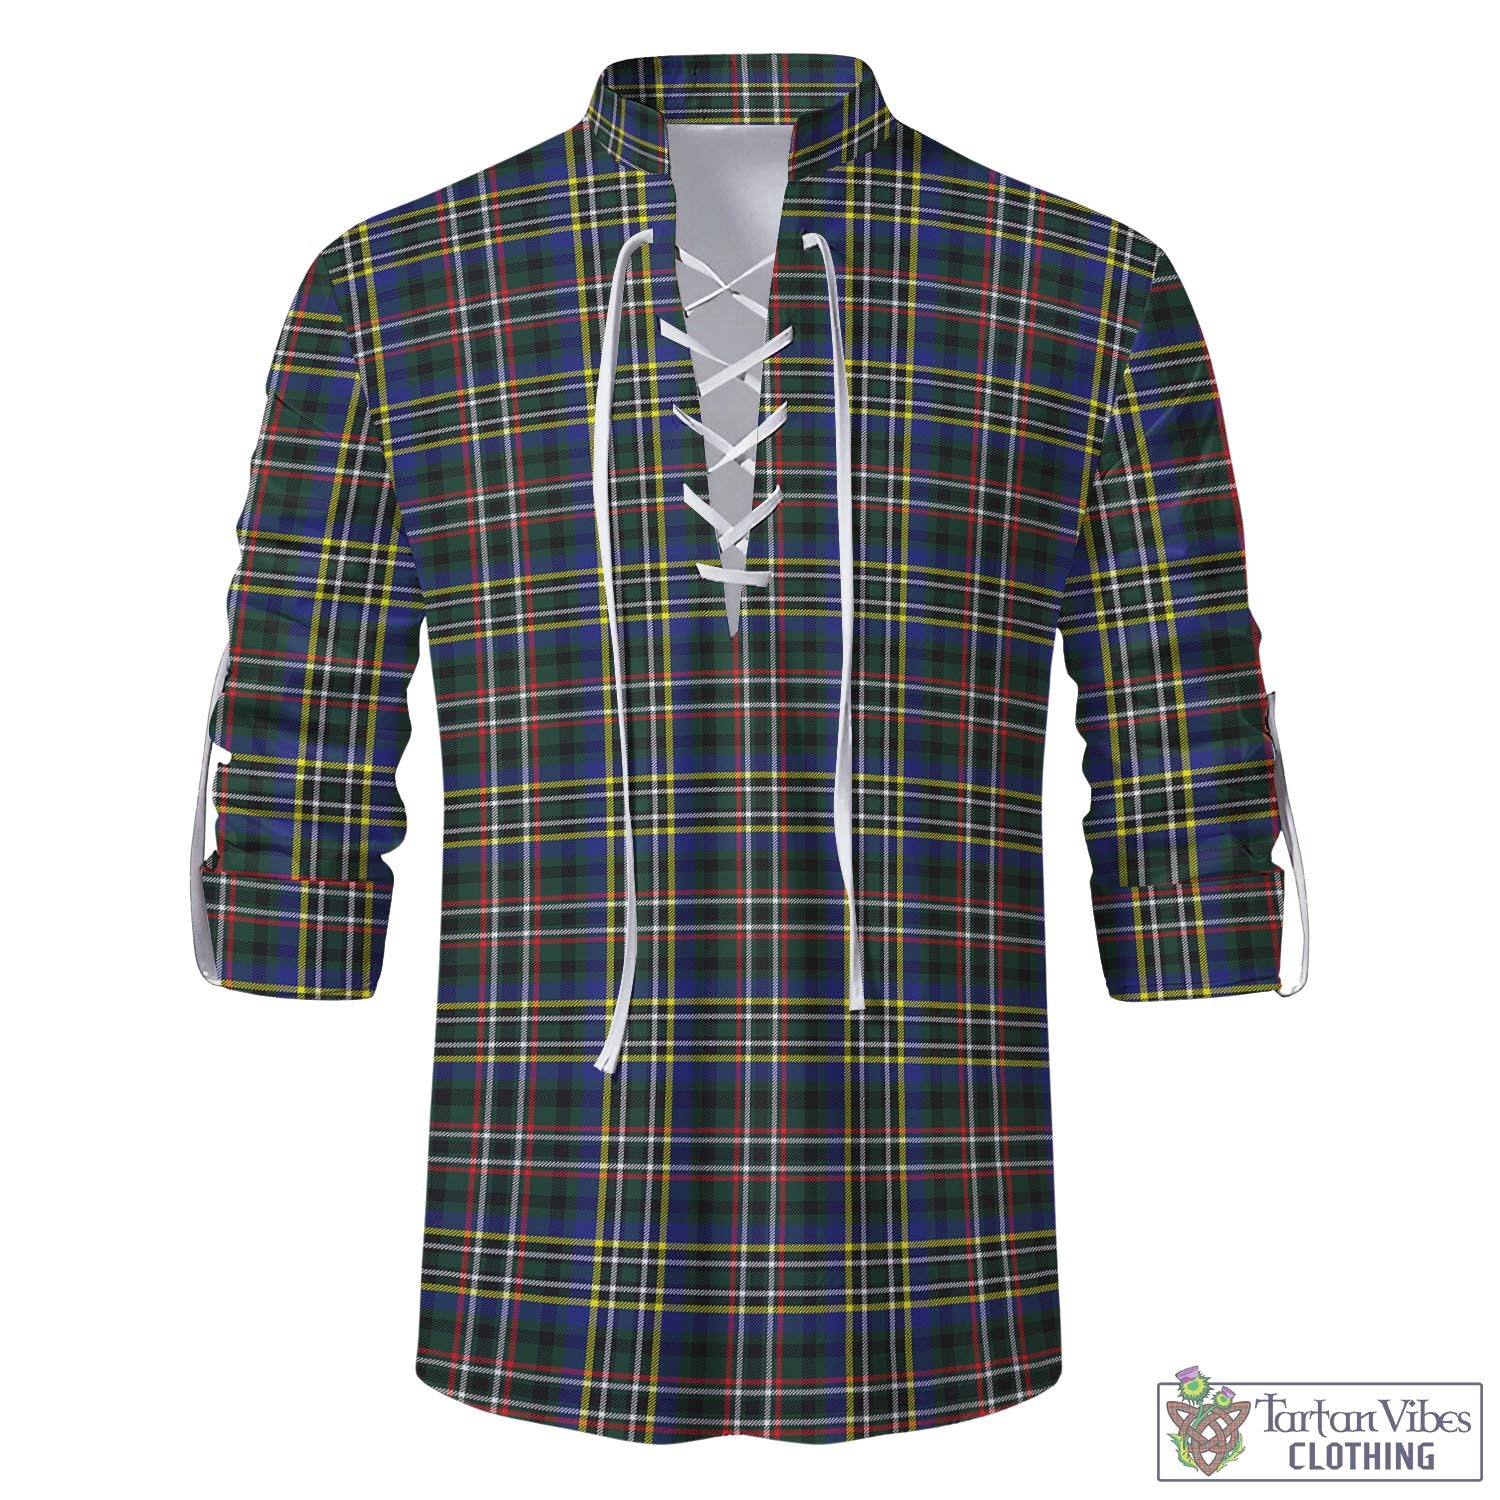 Tartan Vibes Clothing Scott Green Modern Tartan Men's Scottish Traditional Jacobite Ghillie Kilt Shirt